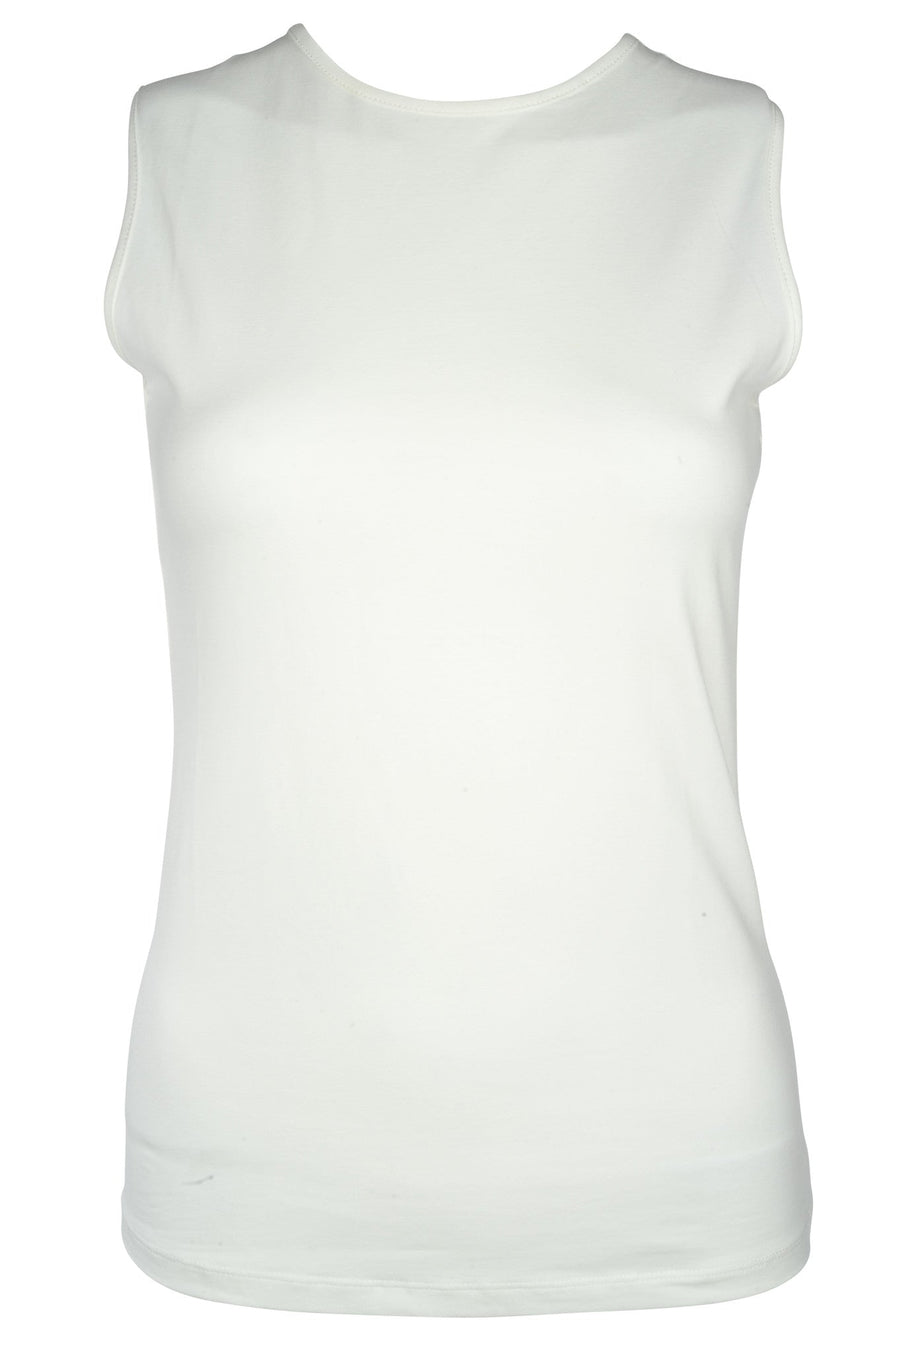 Sleeveless Tee Shirt For Women – Junees